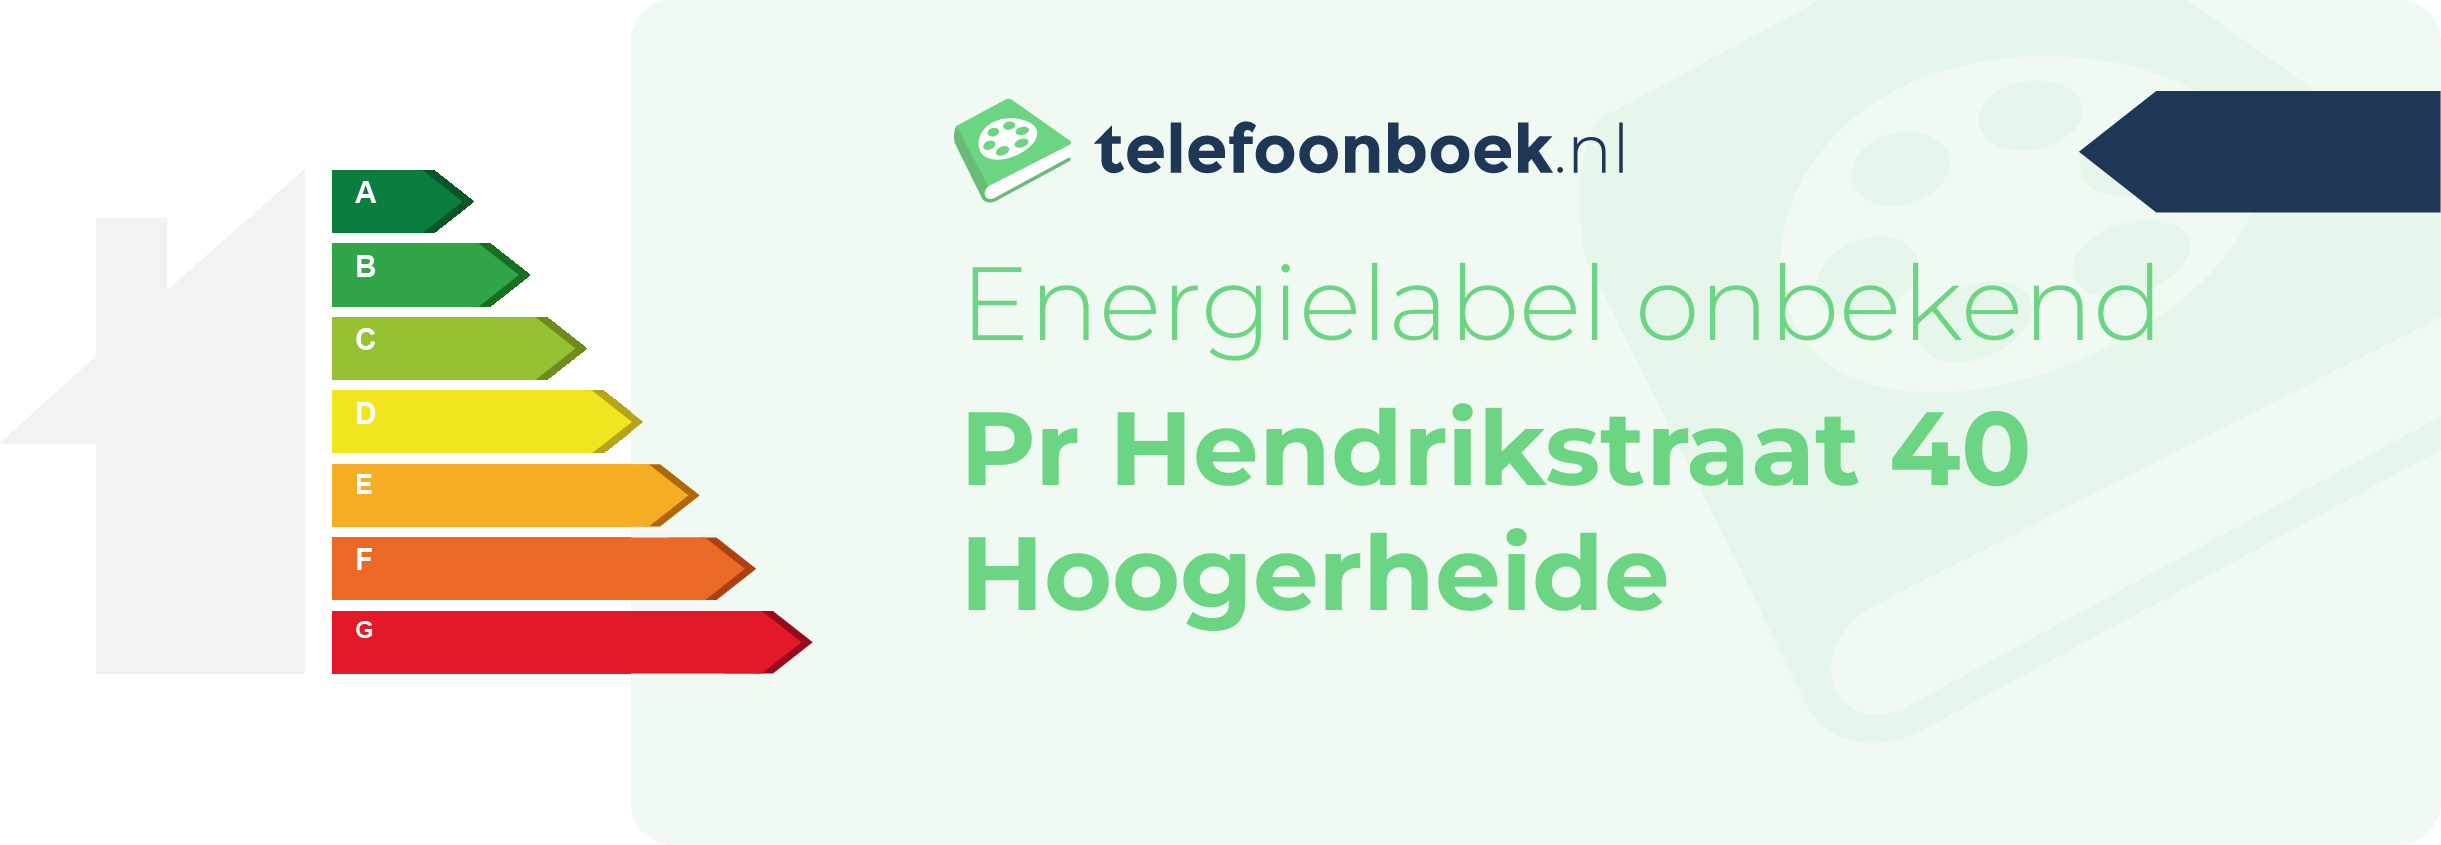 Energielabel Pr Hendrikstraat 40 Hoogerheide